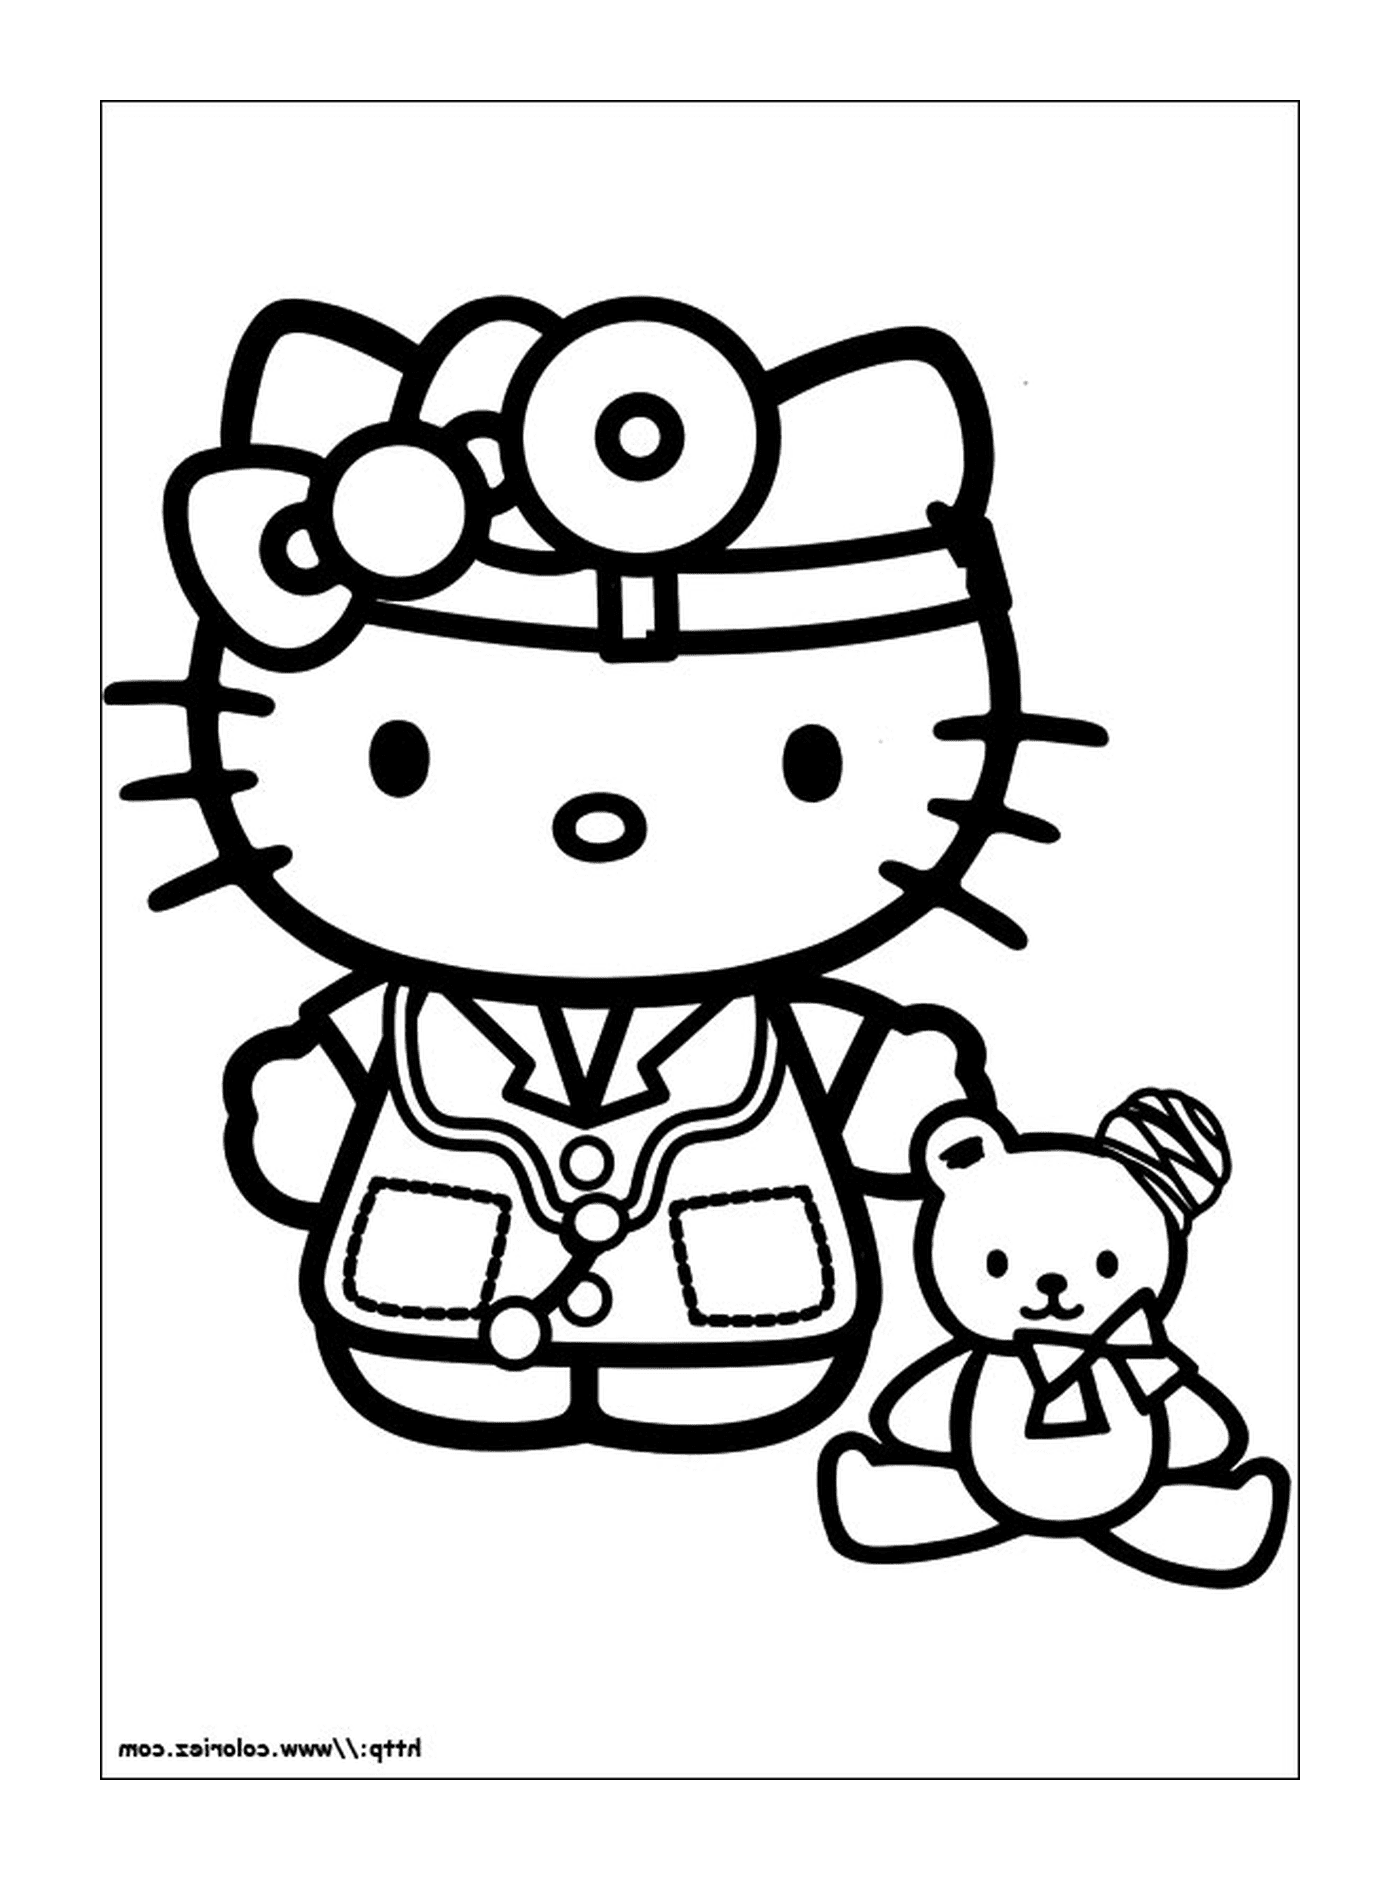  Hello Kitty nurse with a teddy bear 